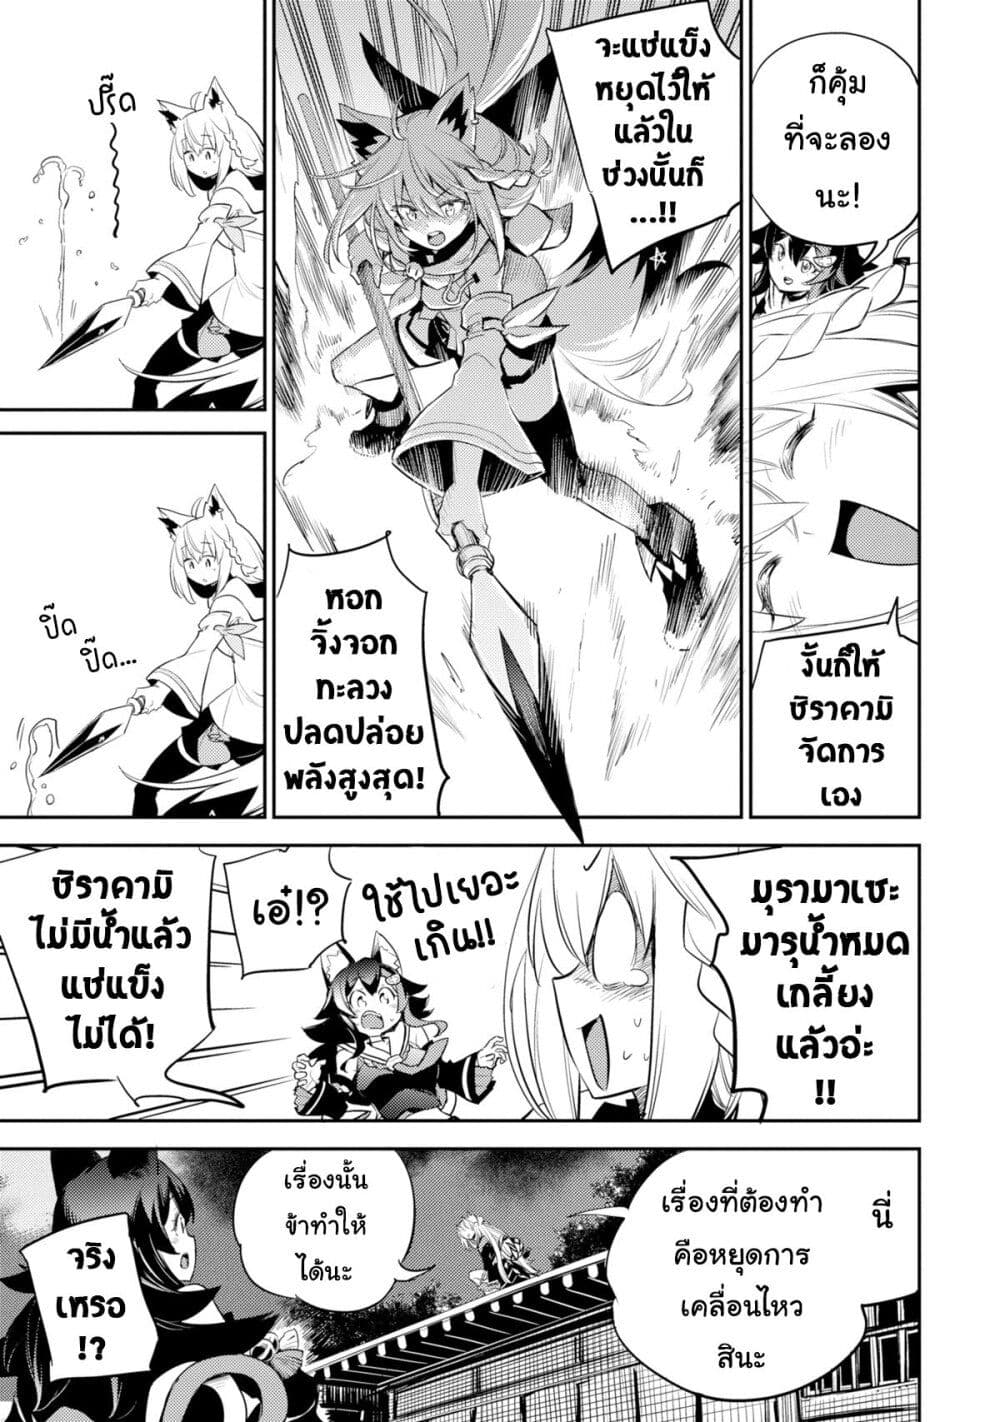 Holoearth Chronicles SideE ~Yamato Phantasia~ ตอนที่ 17 (3)